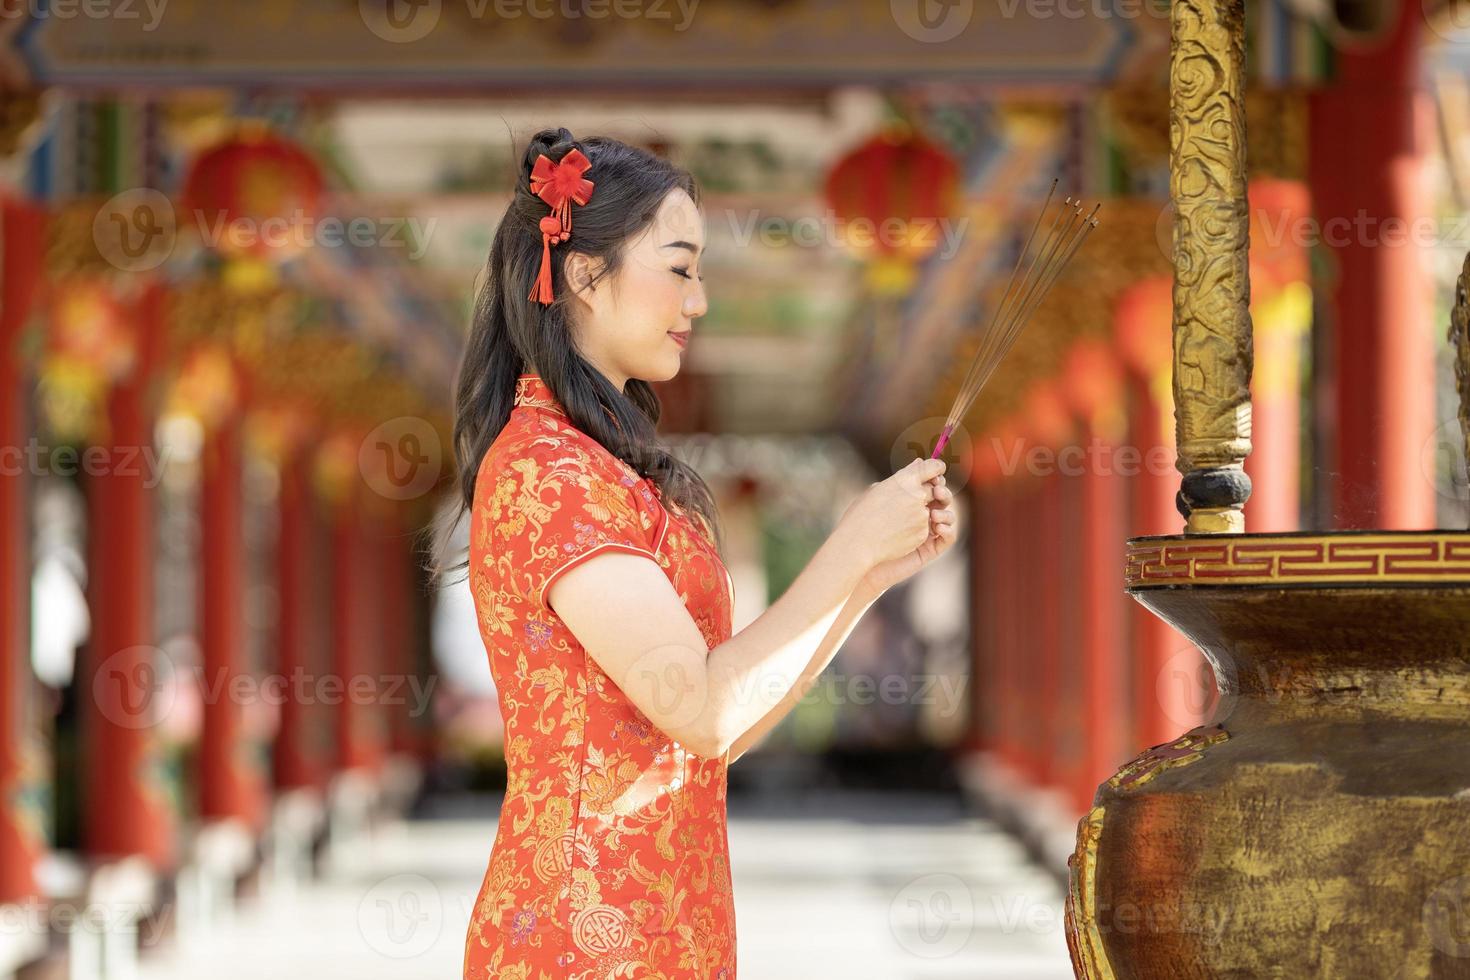 asiatico donna nel rosso cheongsam qipao vestito è offerta incenso per il ancestrale Dio dentro Cinese buddista tempio durante lunare nuovo anno per per migliore desiderio benedizione e bene fortuna concetto foto